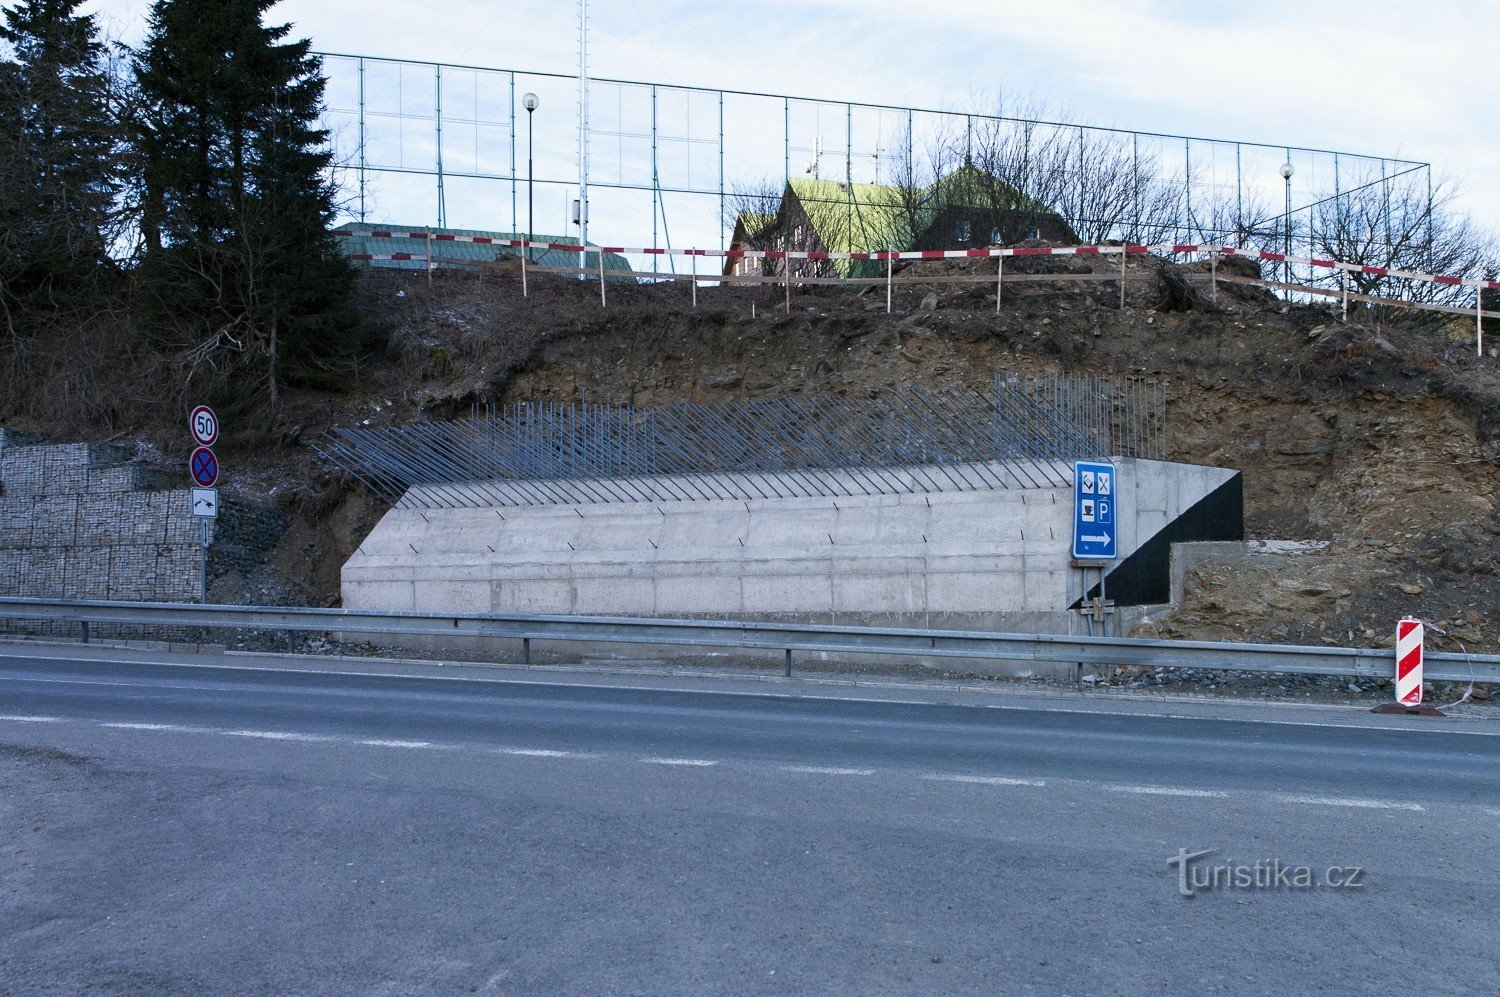 As fundações da ponte na República Checa